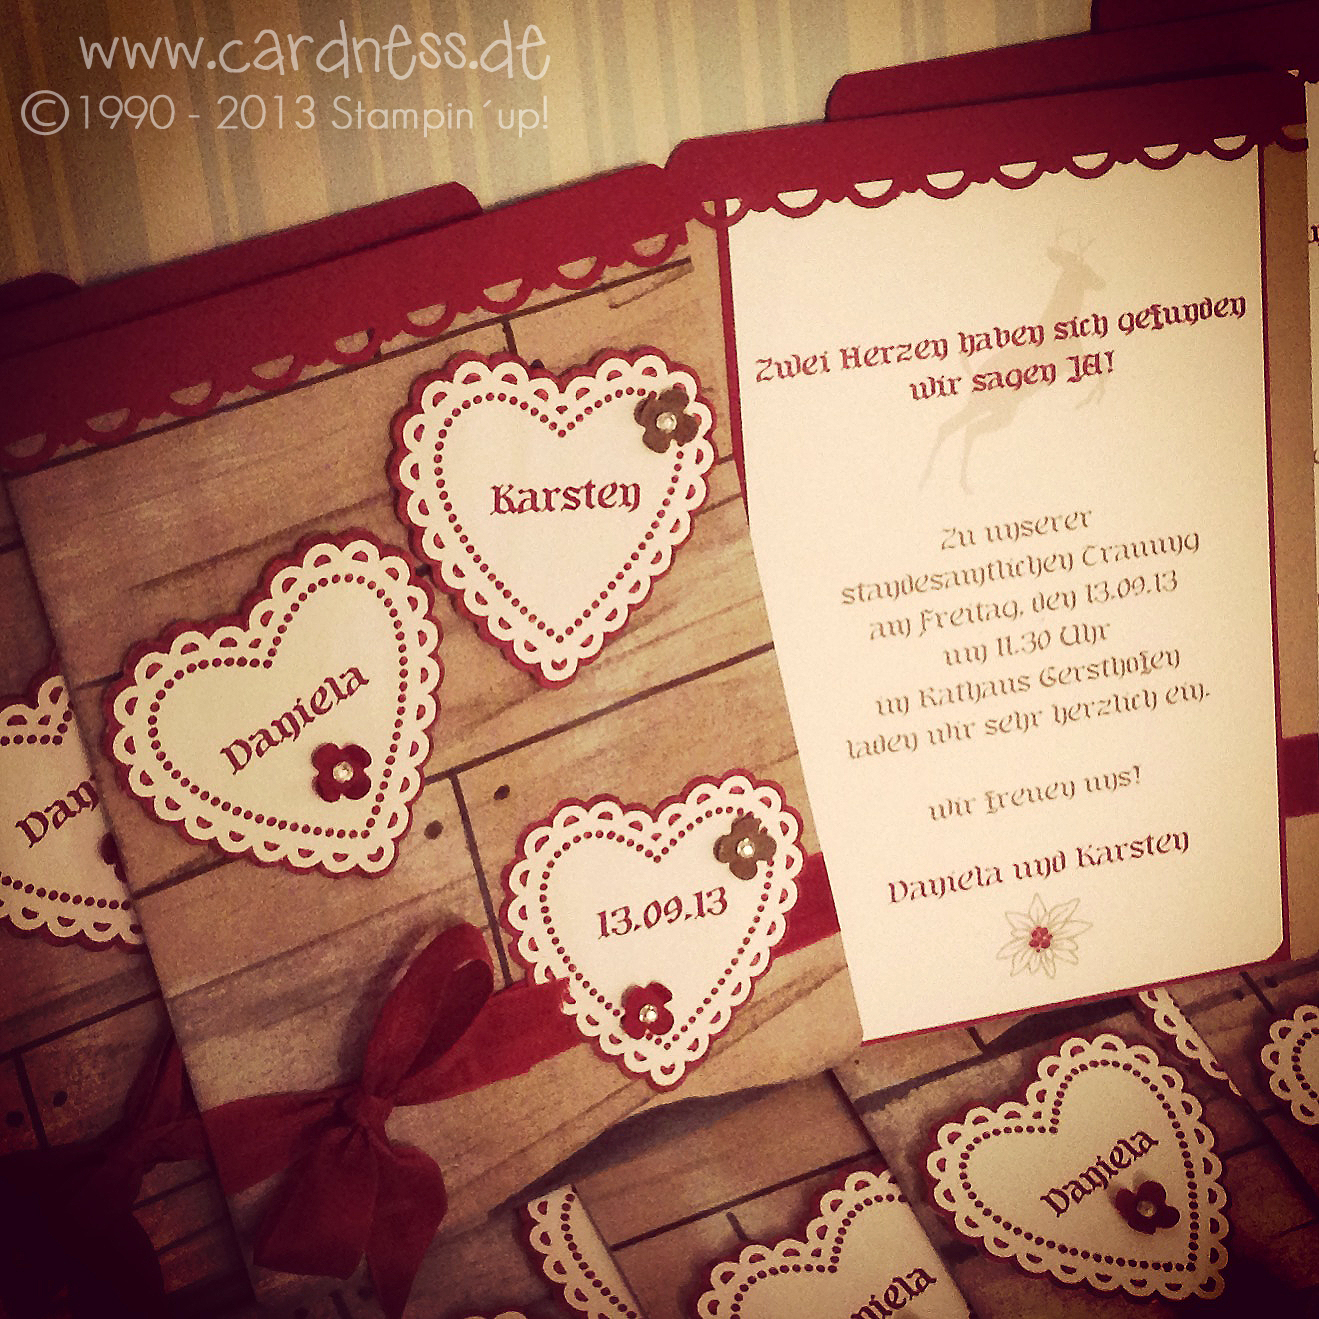 cardness - be creative: Cardness heiratet - die fertigen Einladungskarten